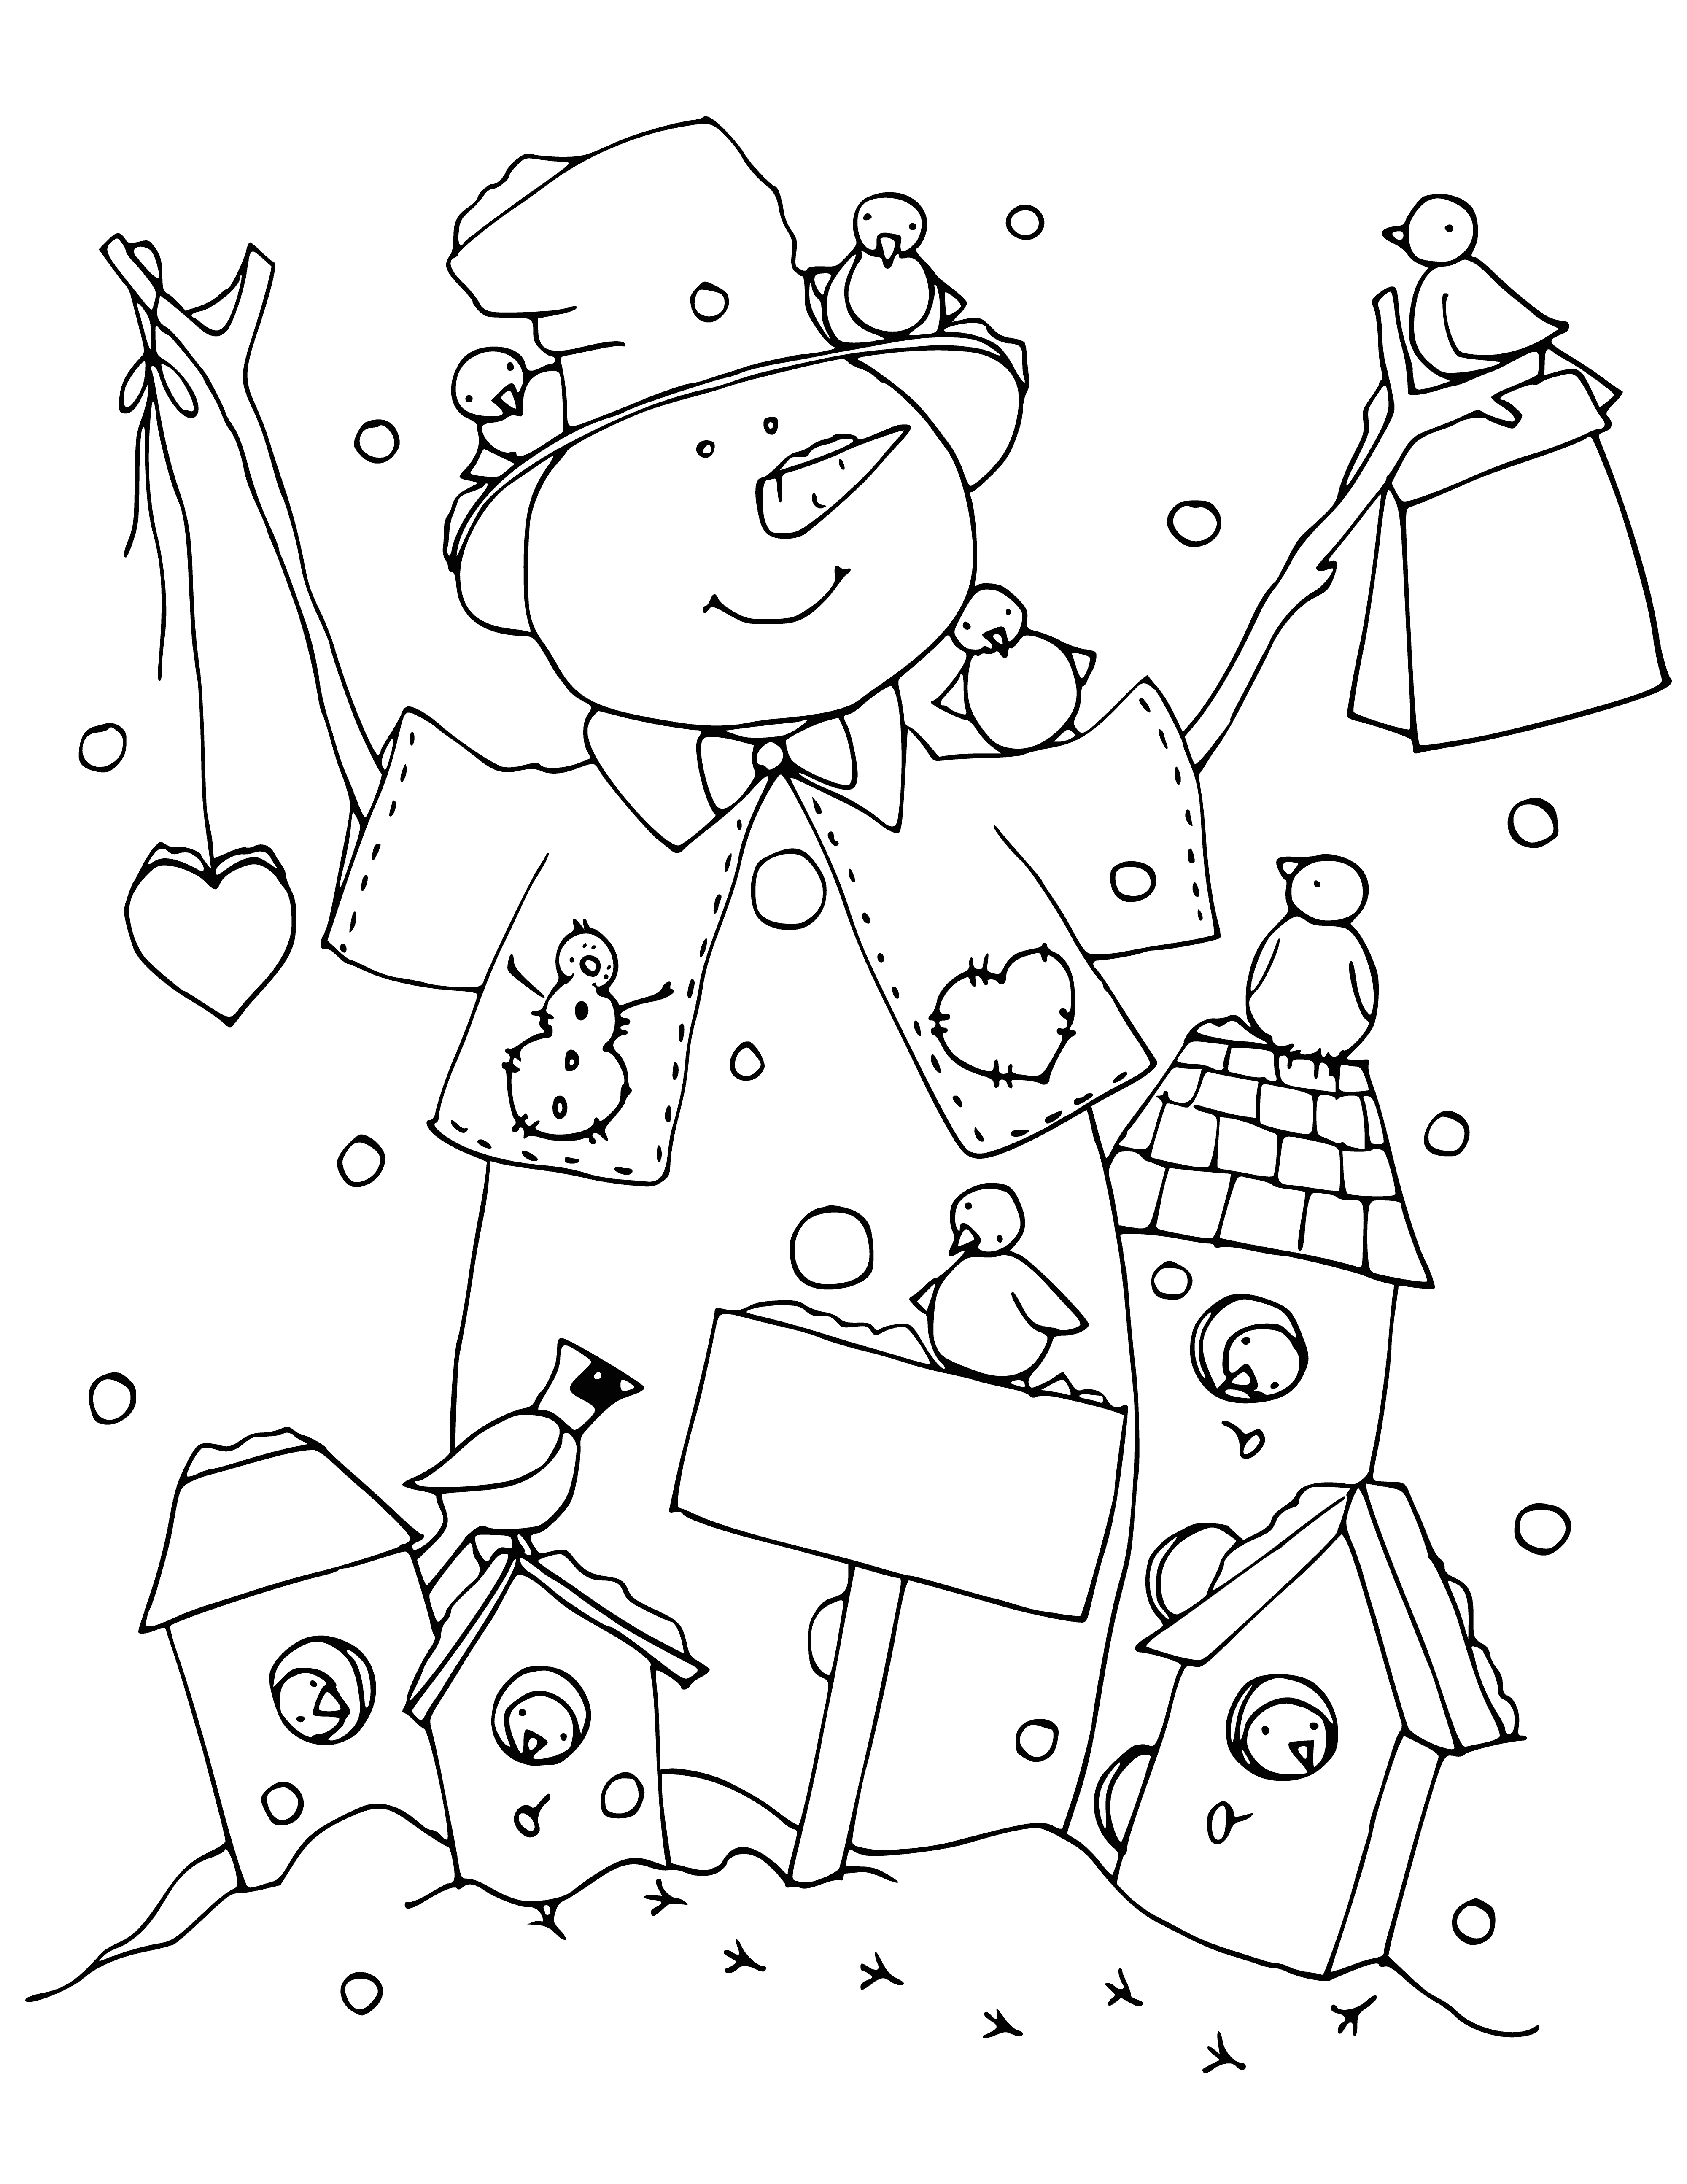 Besleyiciler ile kardan adam boyama sayfası